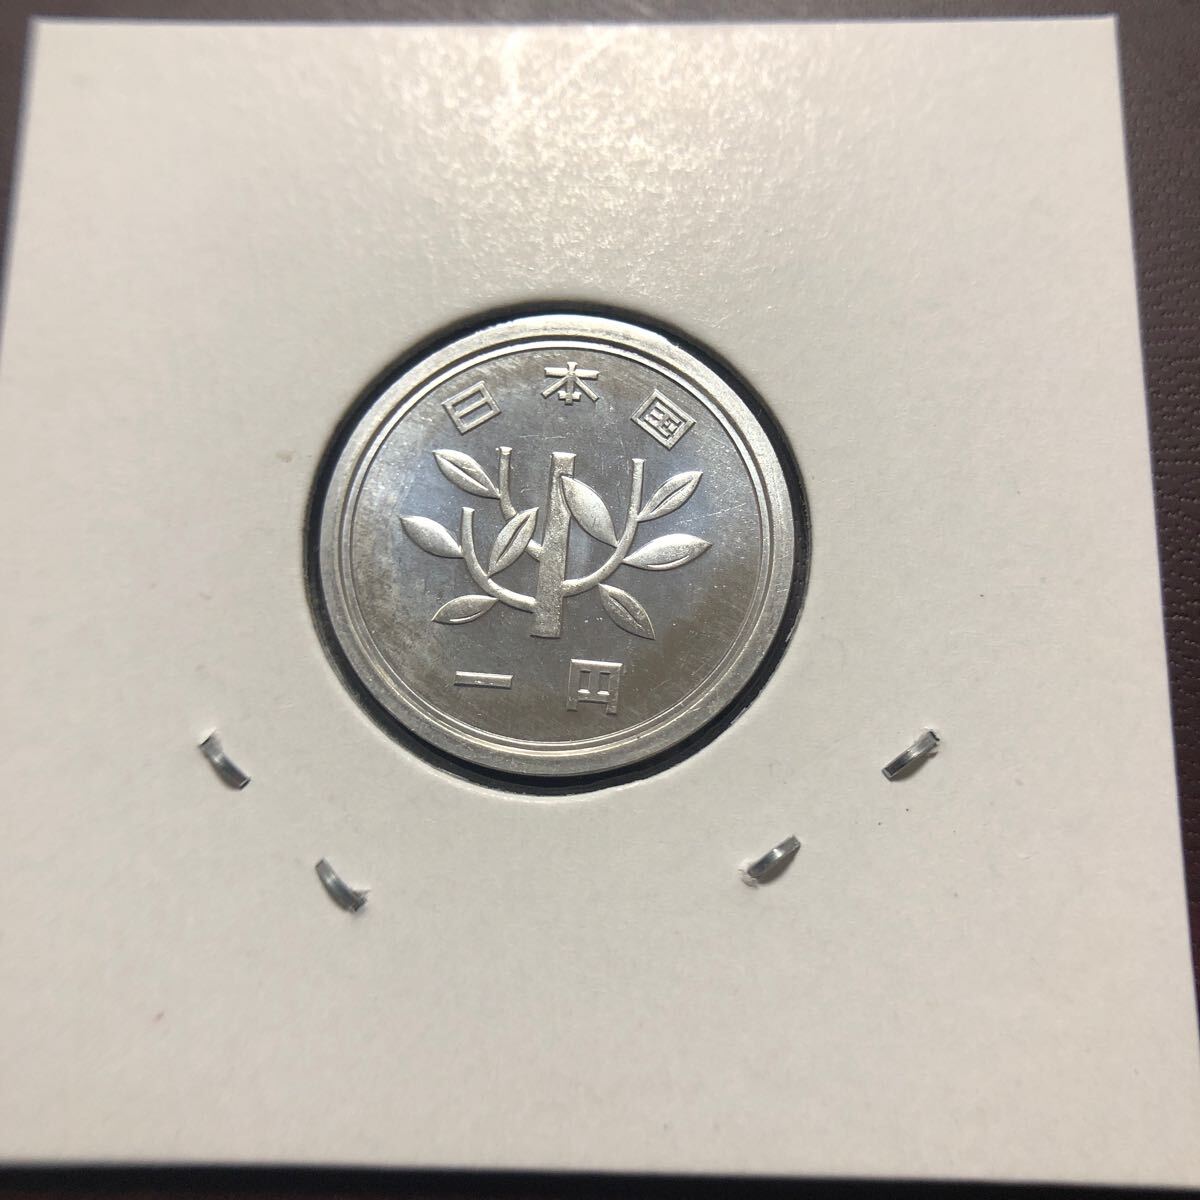 1円硬貨 昭和59年 セット出しの画像2